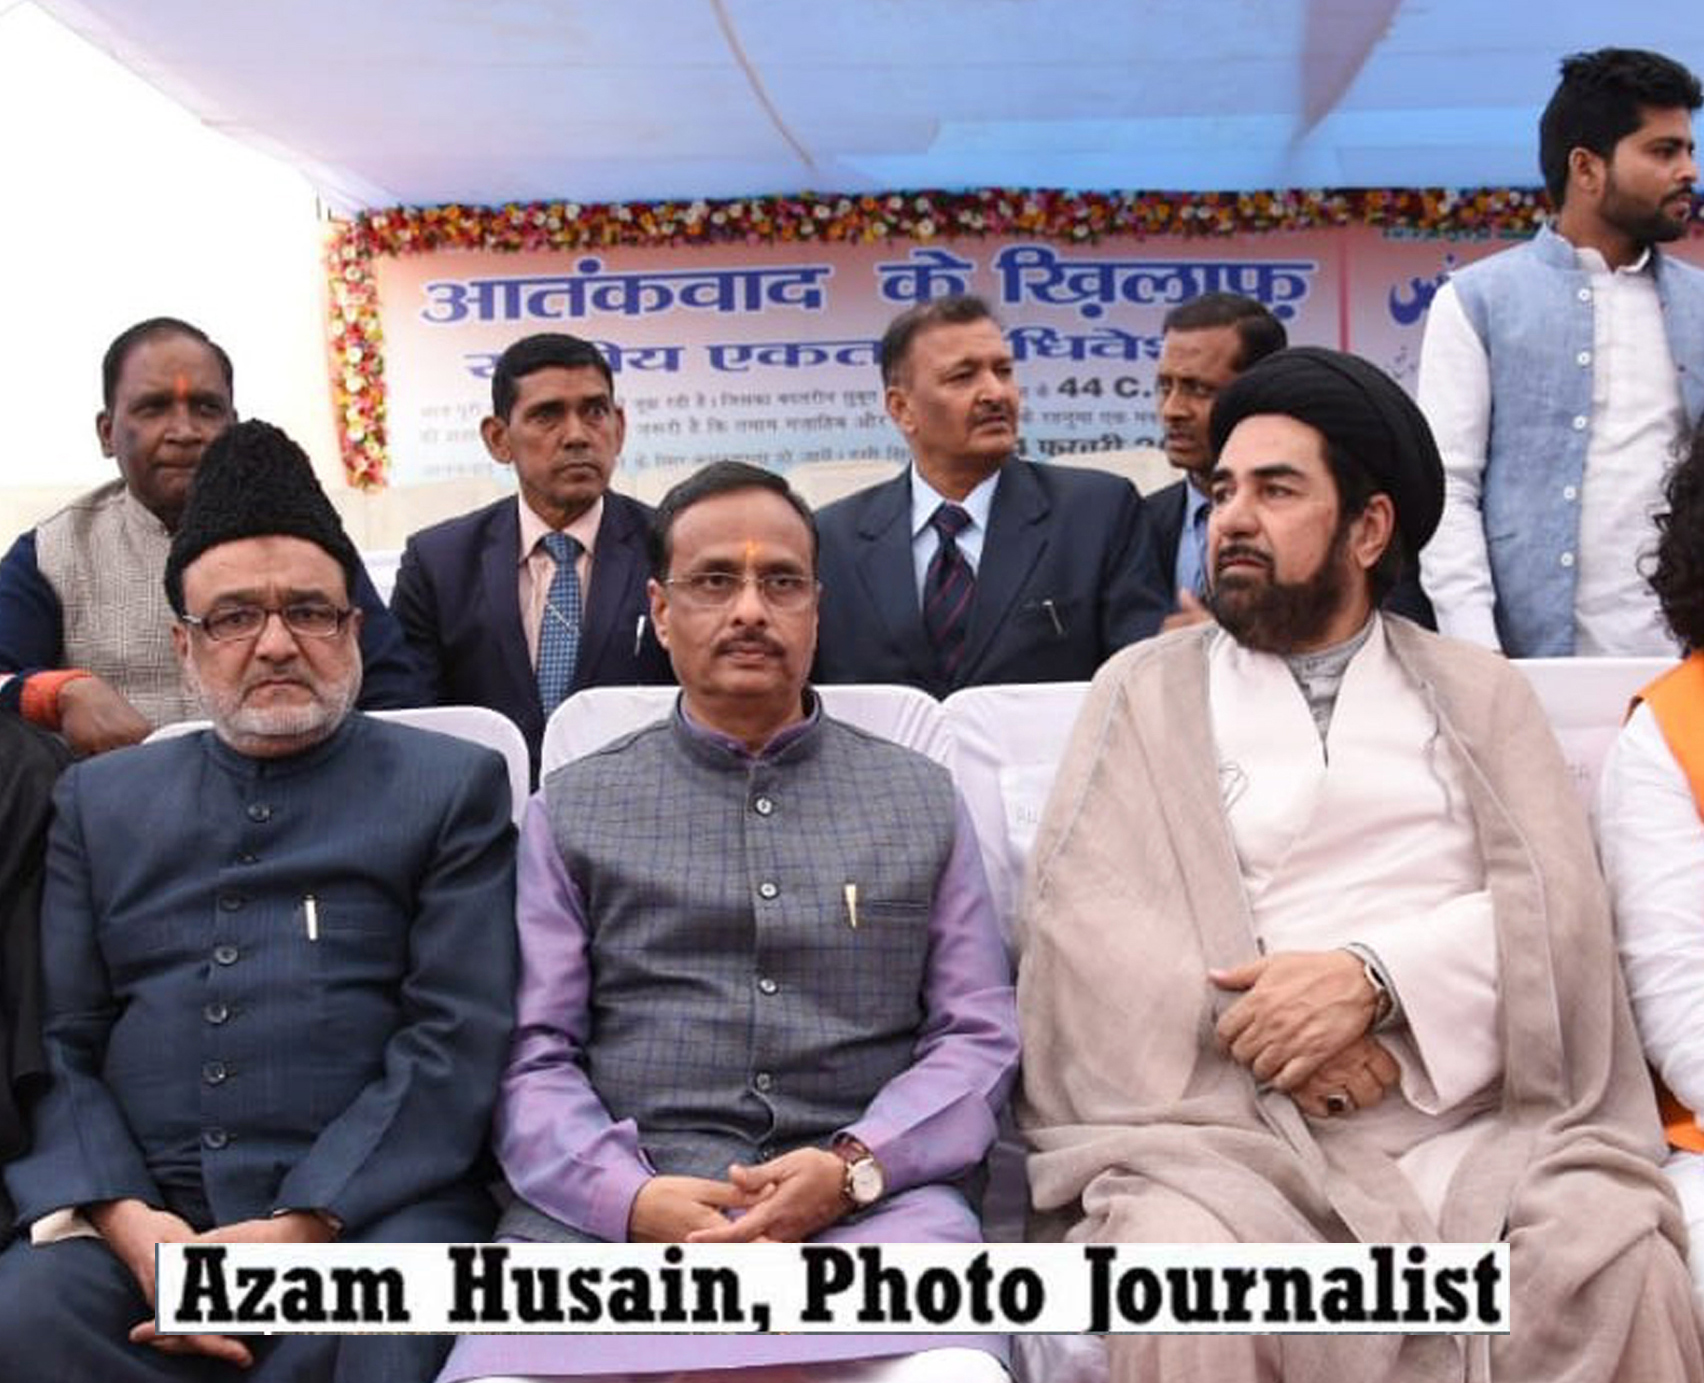 ایس این لال اور فوٹوگر جرنلسٹ اعظم حسین نے مولانا مرزا اطہر کی برسی کے موقع پر تصاویر کی نمائش کا اہتمام کیا